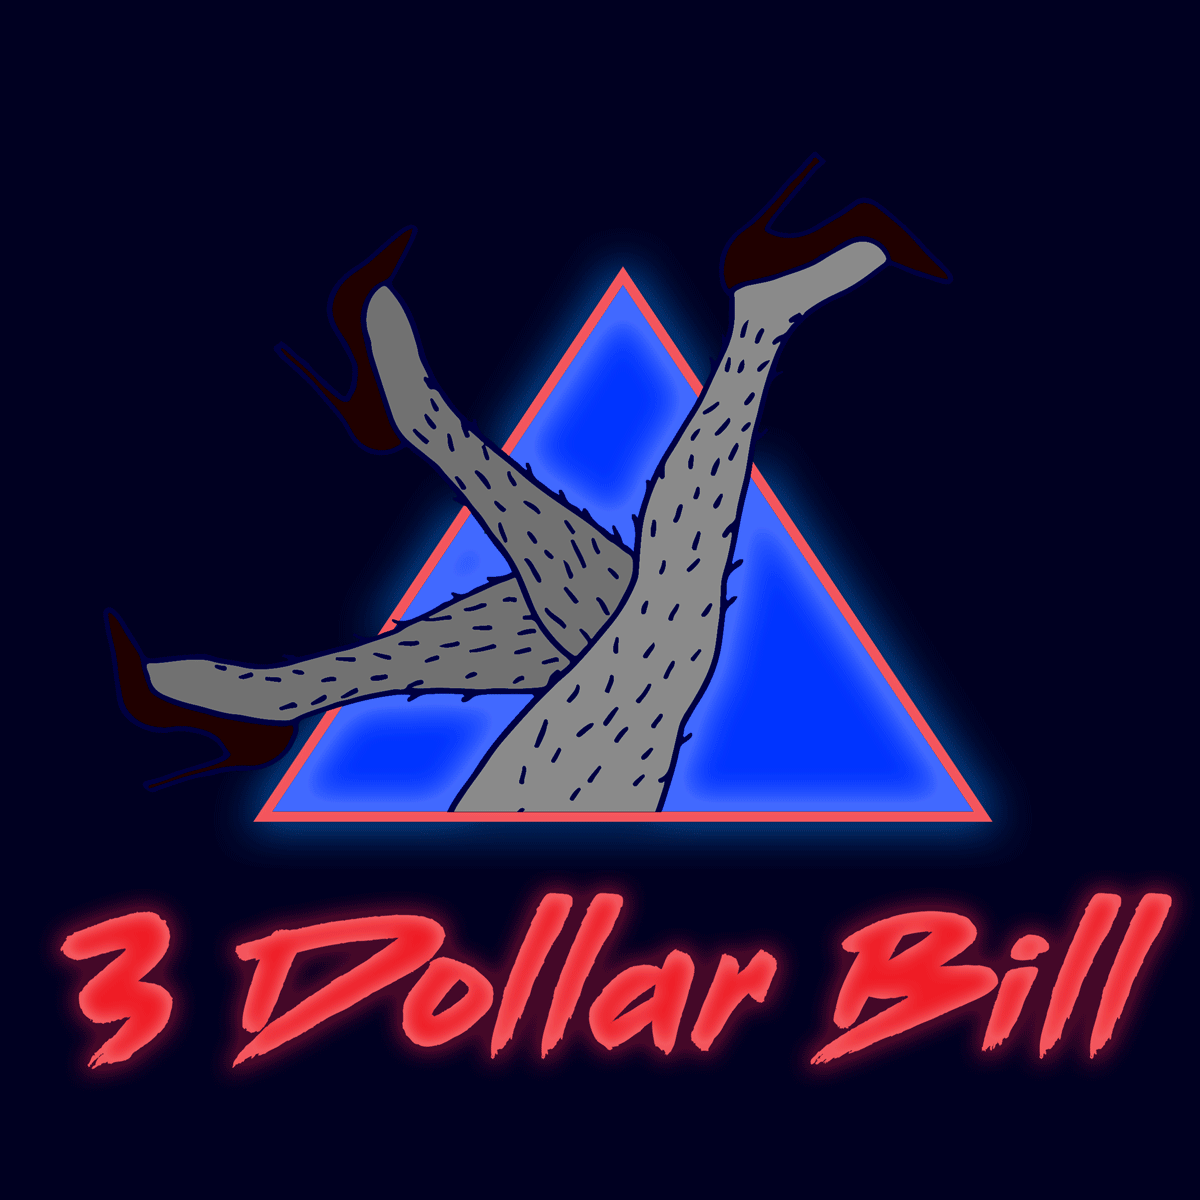 3 Dollar bill